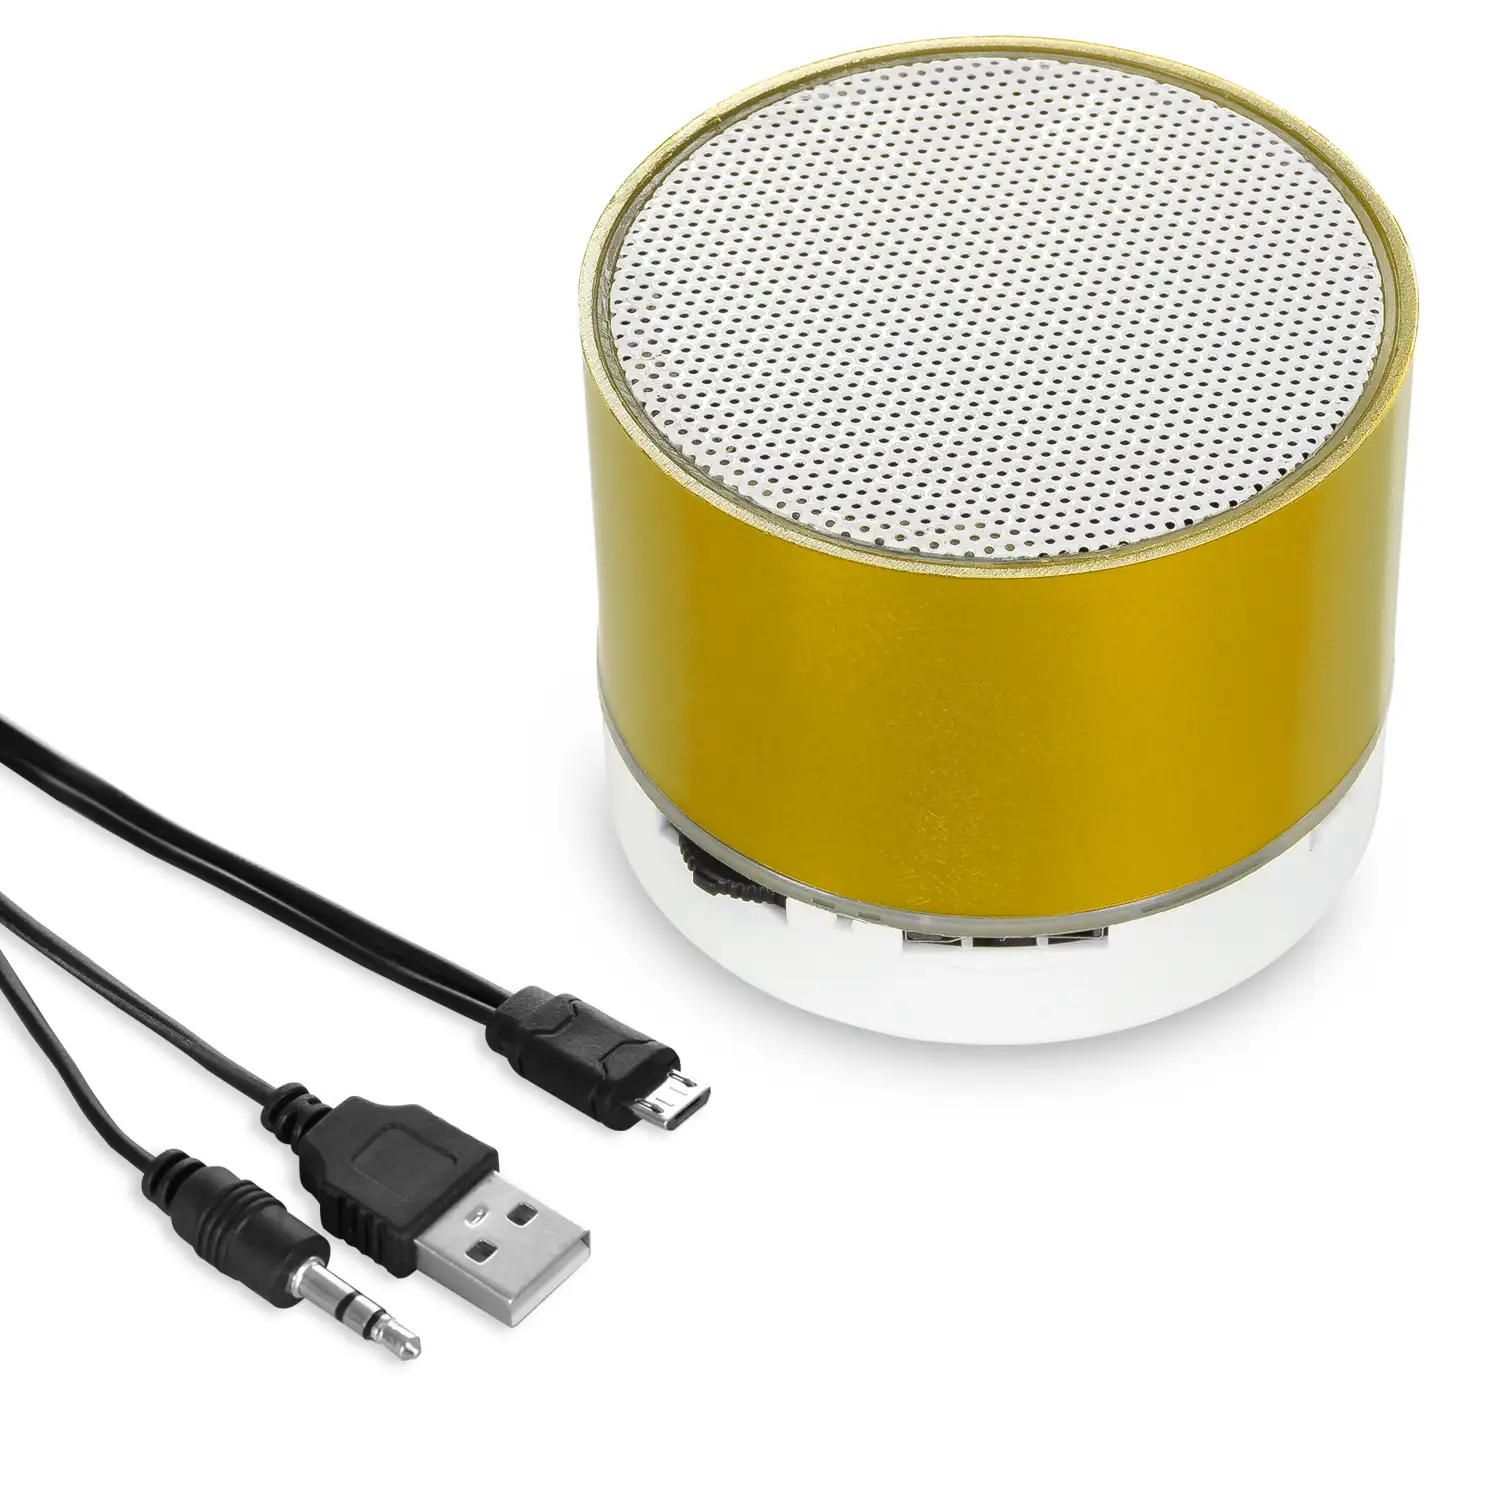 Altavoz compacto Viancos Bluetooth 3.0 de 3W, con luz led, manos libres y radio FM.